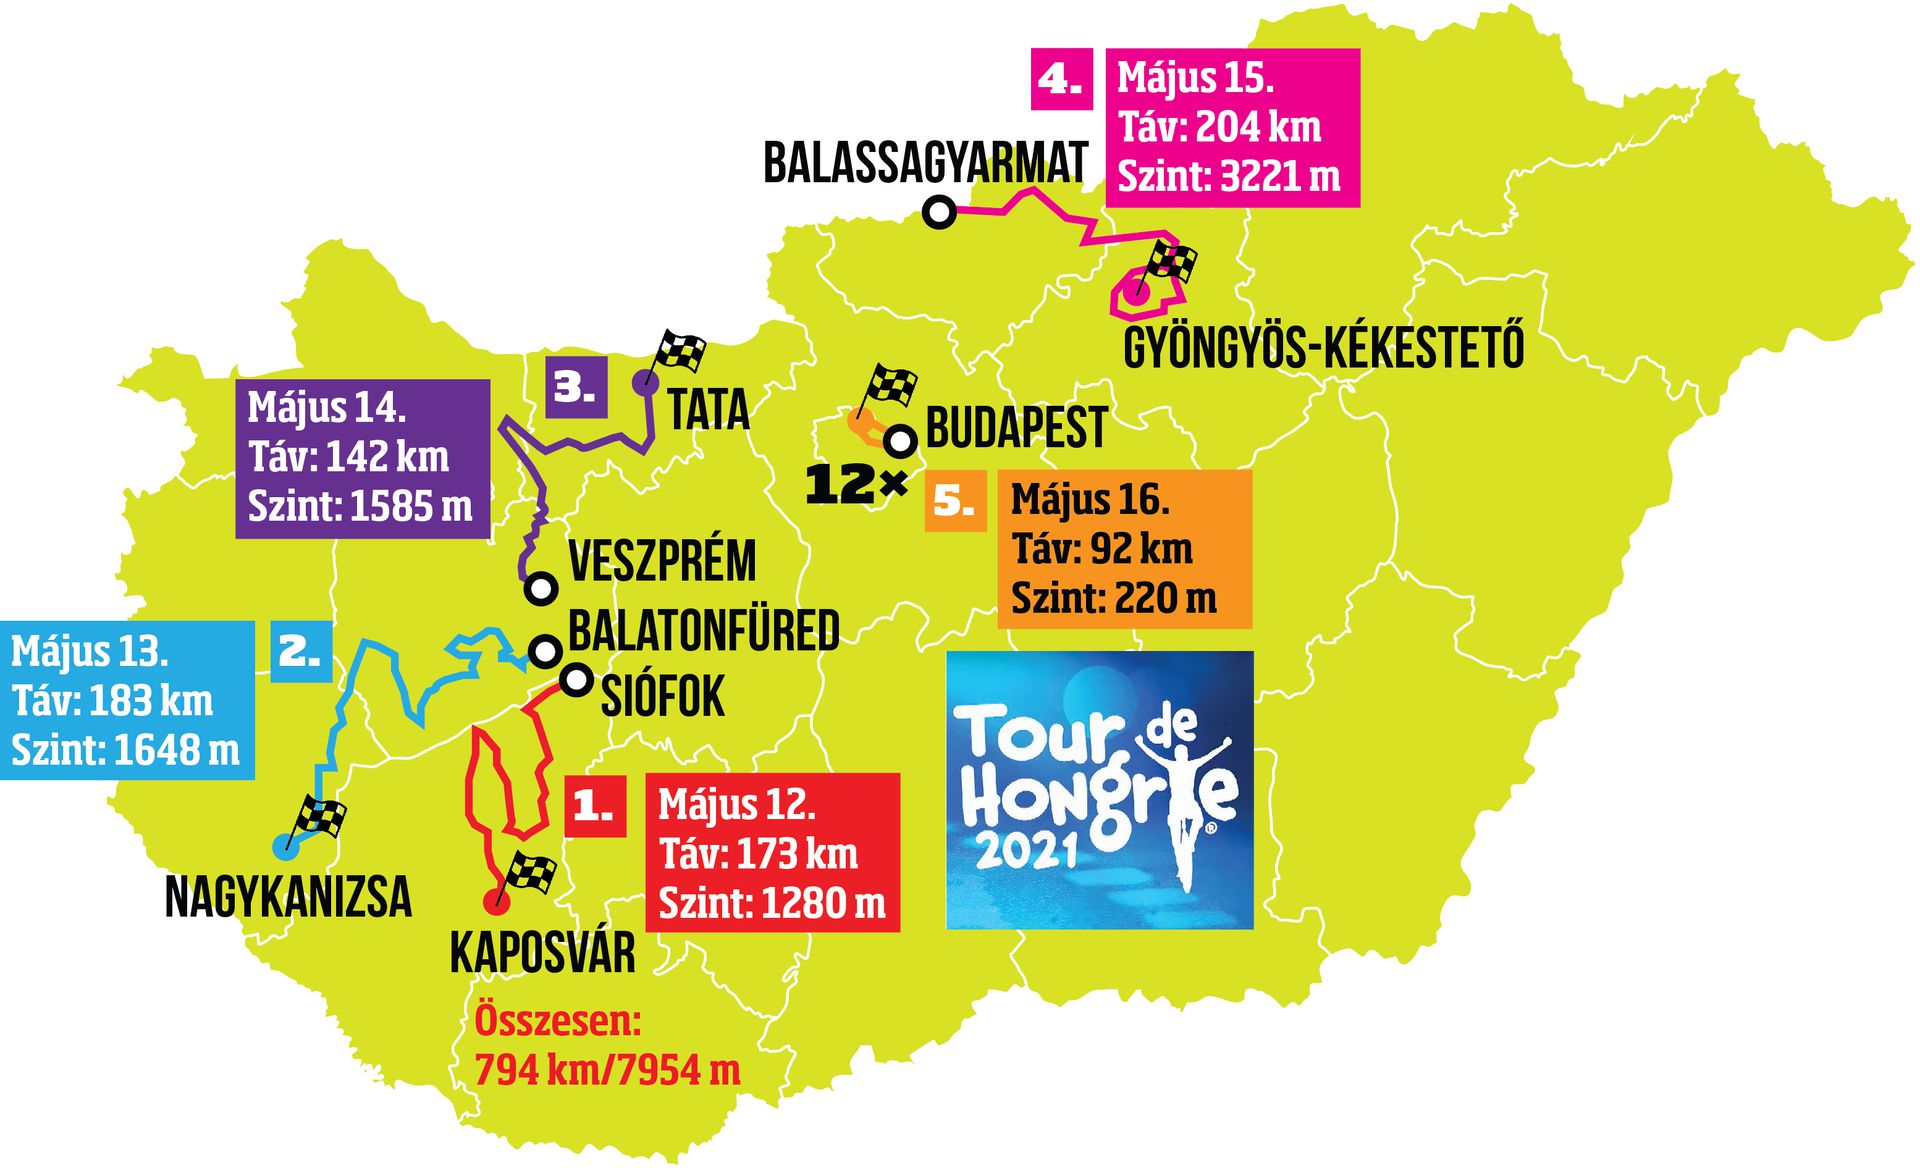 Öt nap alatt öt szakaszt kell teljesíteniük a Tour de Hongrie indulóinak